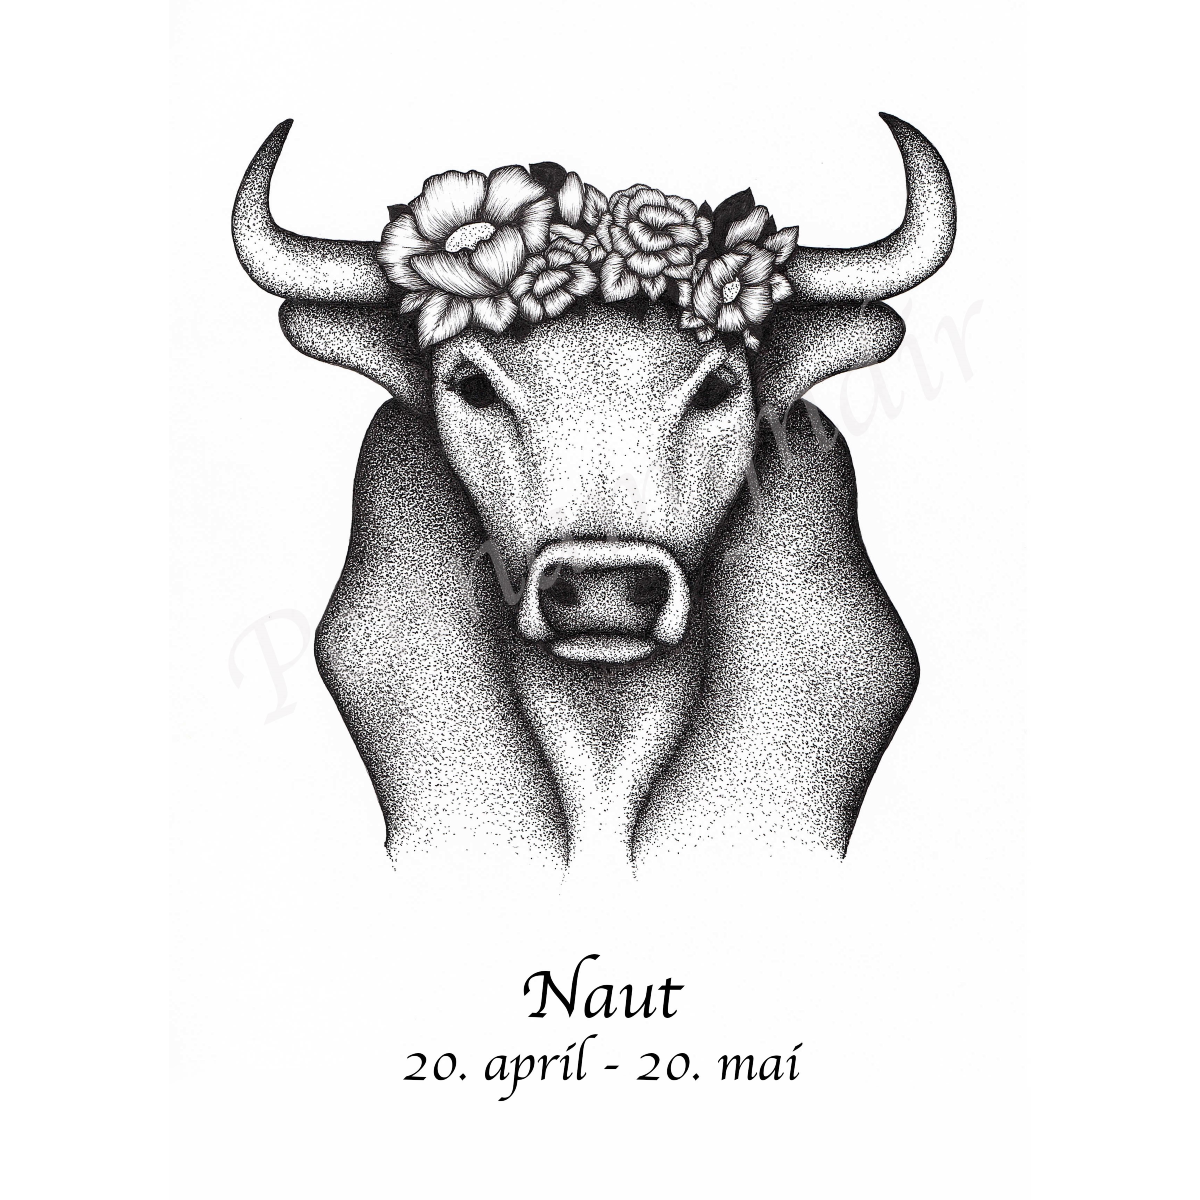 Naut - A (A4)